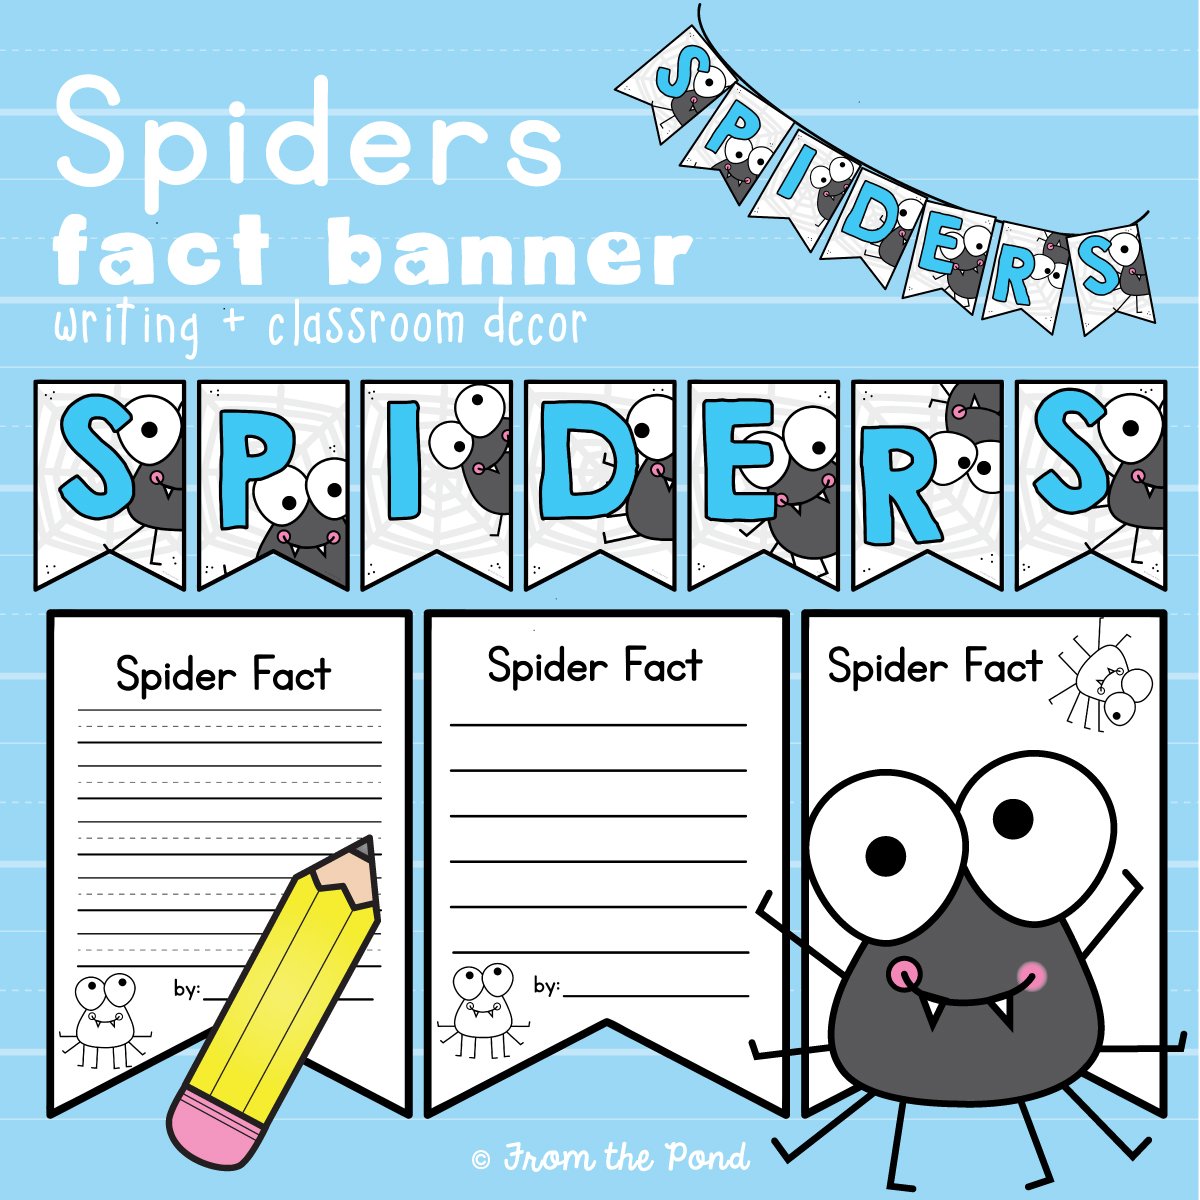 Spider Facts Banner